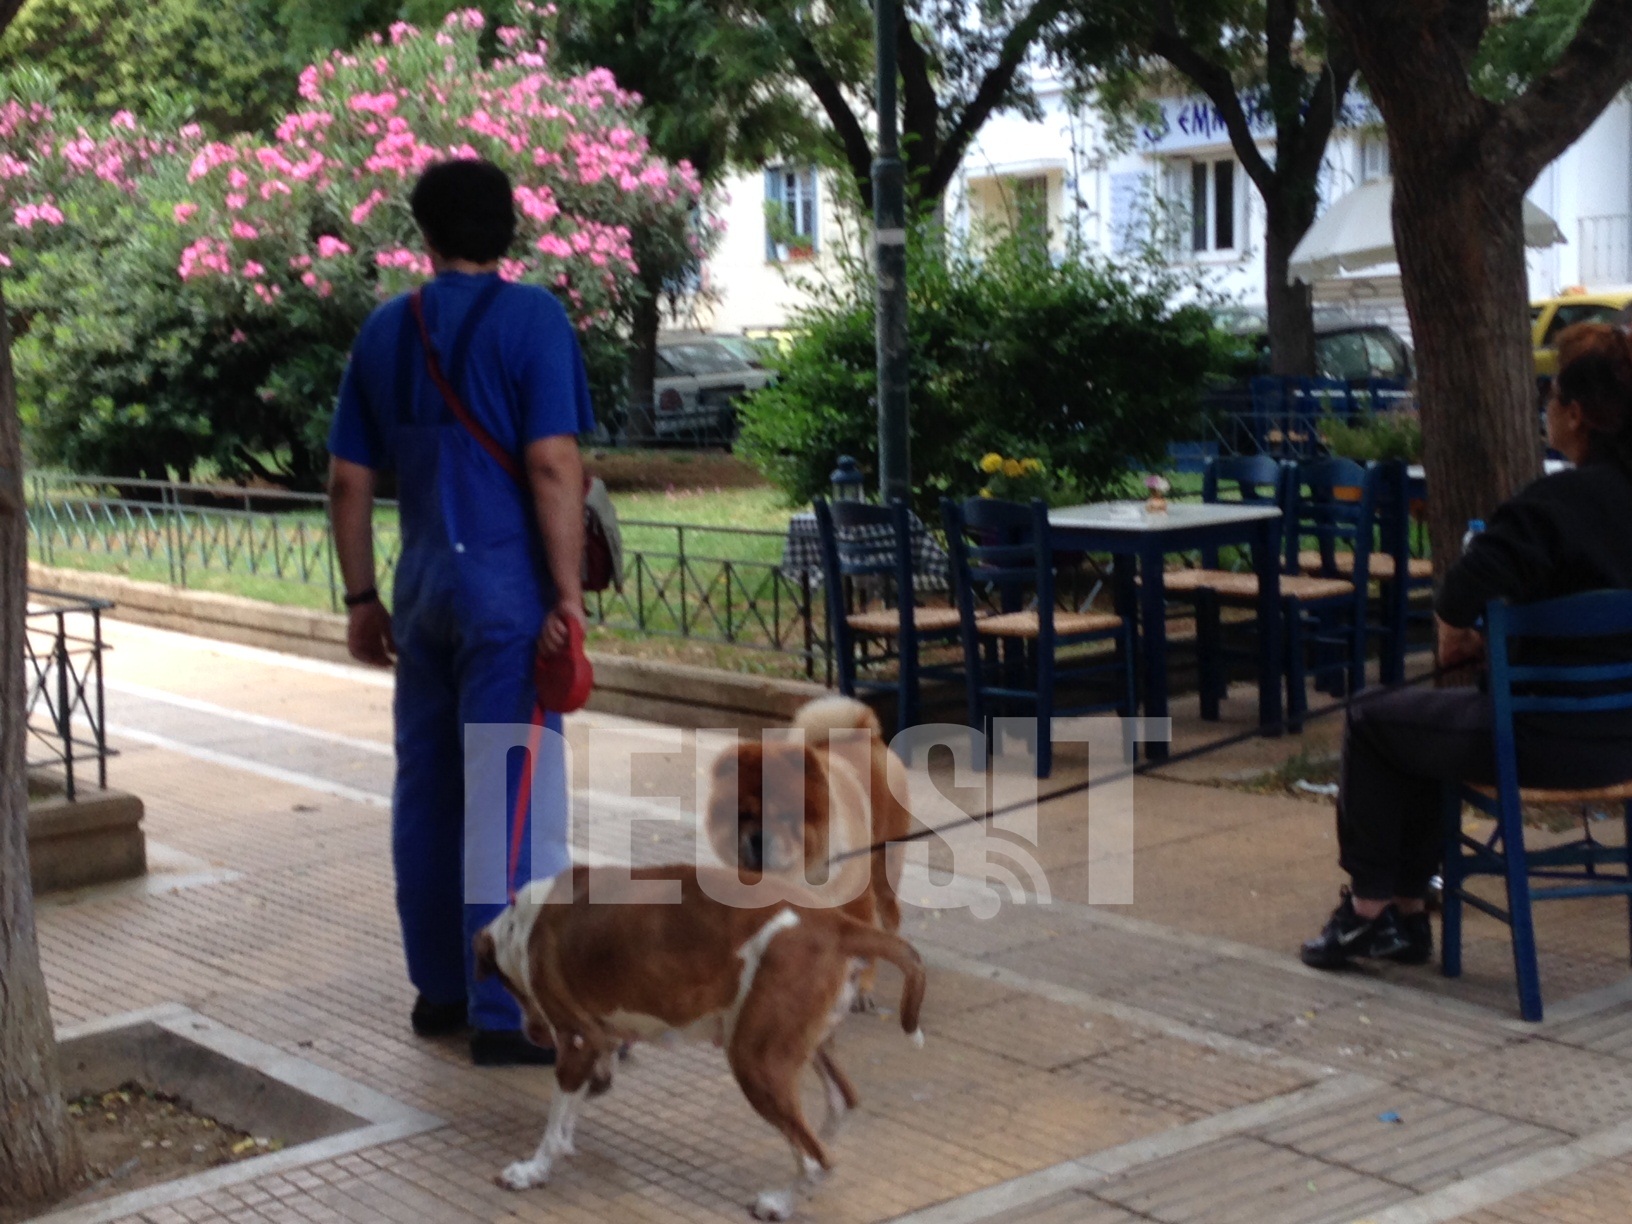 Μέχρι σήμερα το σκυλί που επιτέθηκε στους αστυνομικούς ήταν ήσυχο λένε οι κάτοικοι της περιοχής - ΦΩΤΟ NEWSIT 